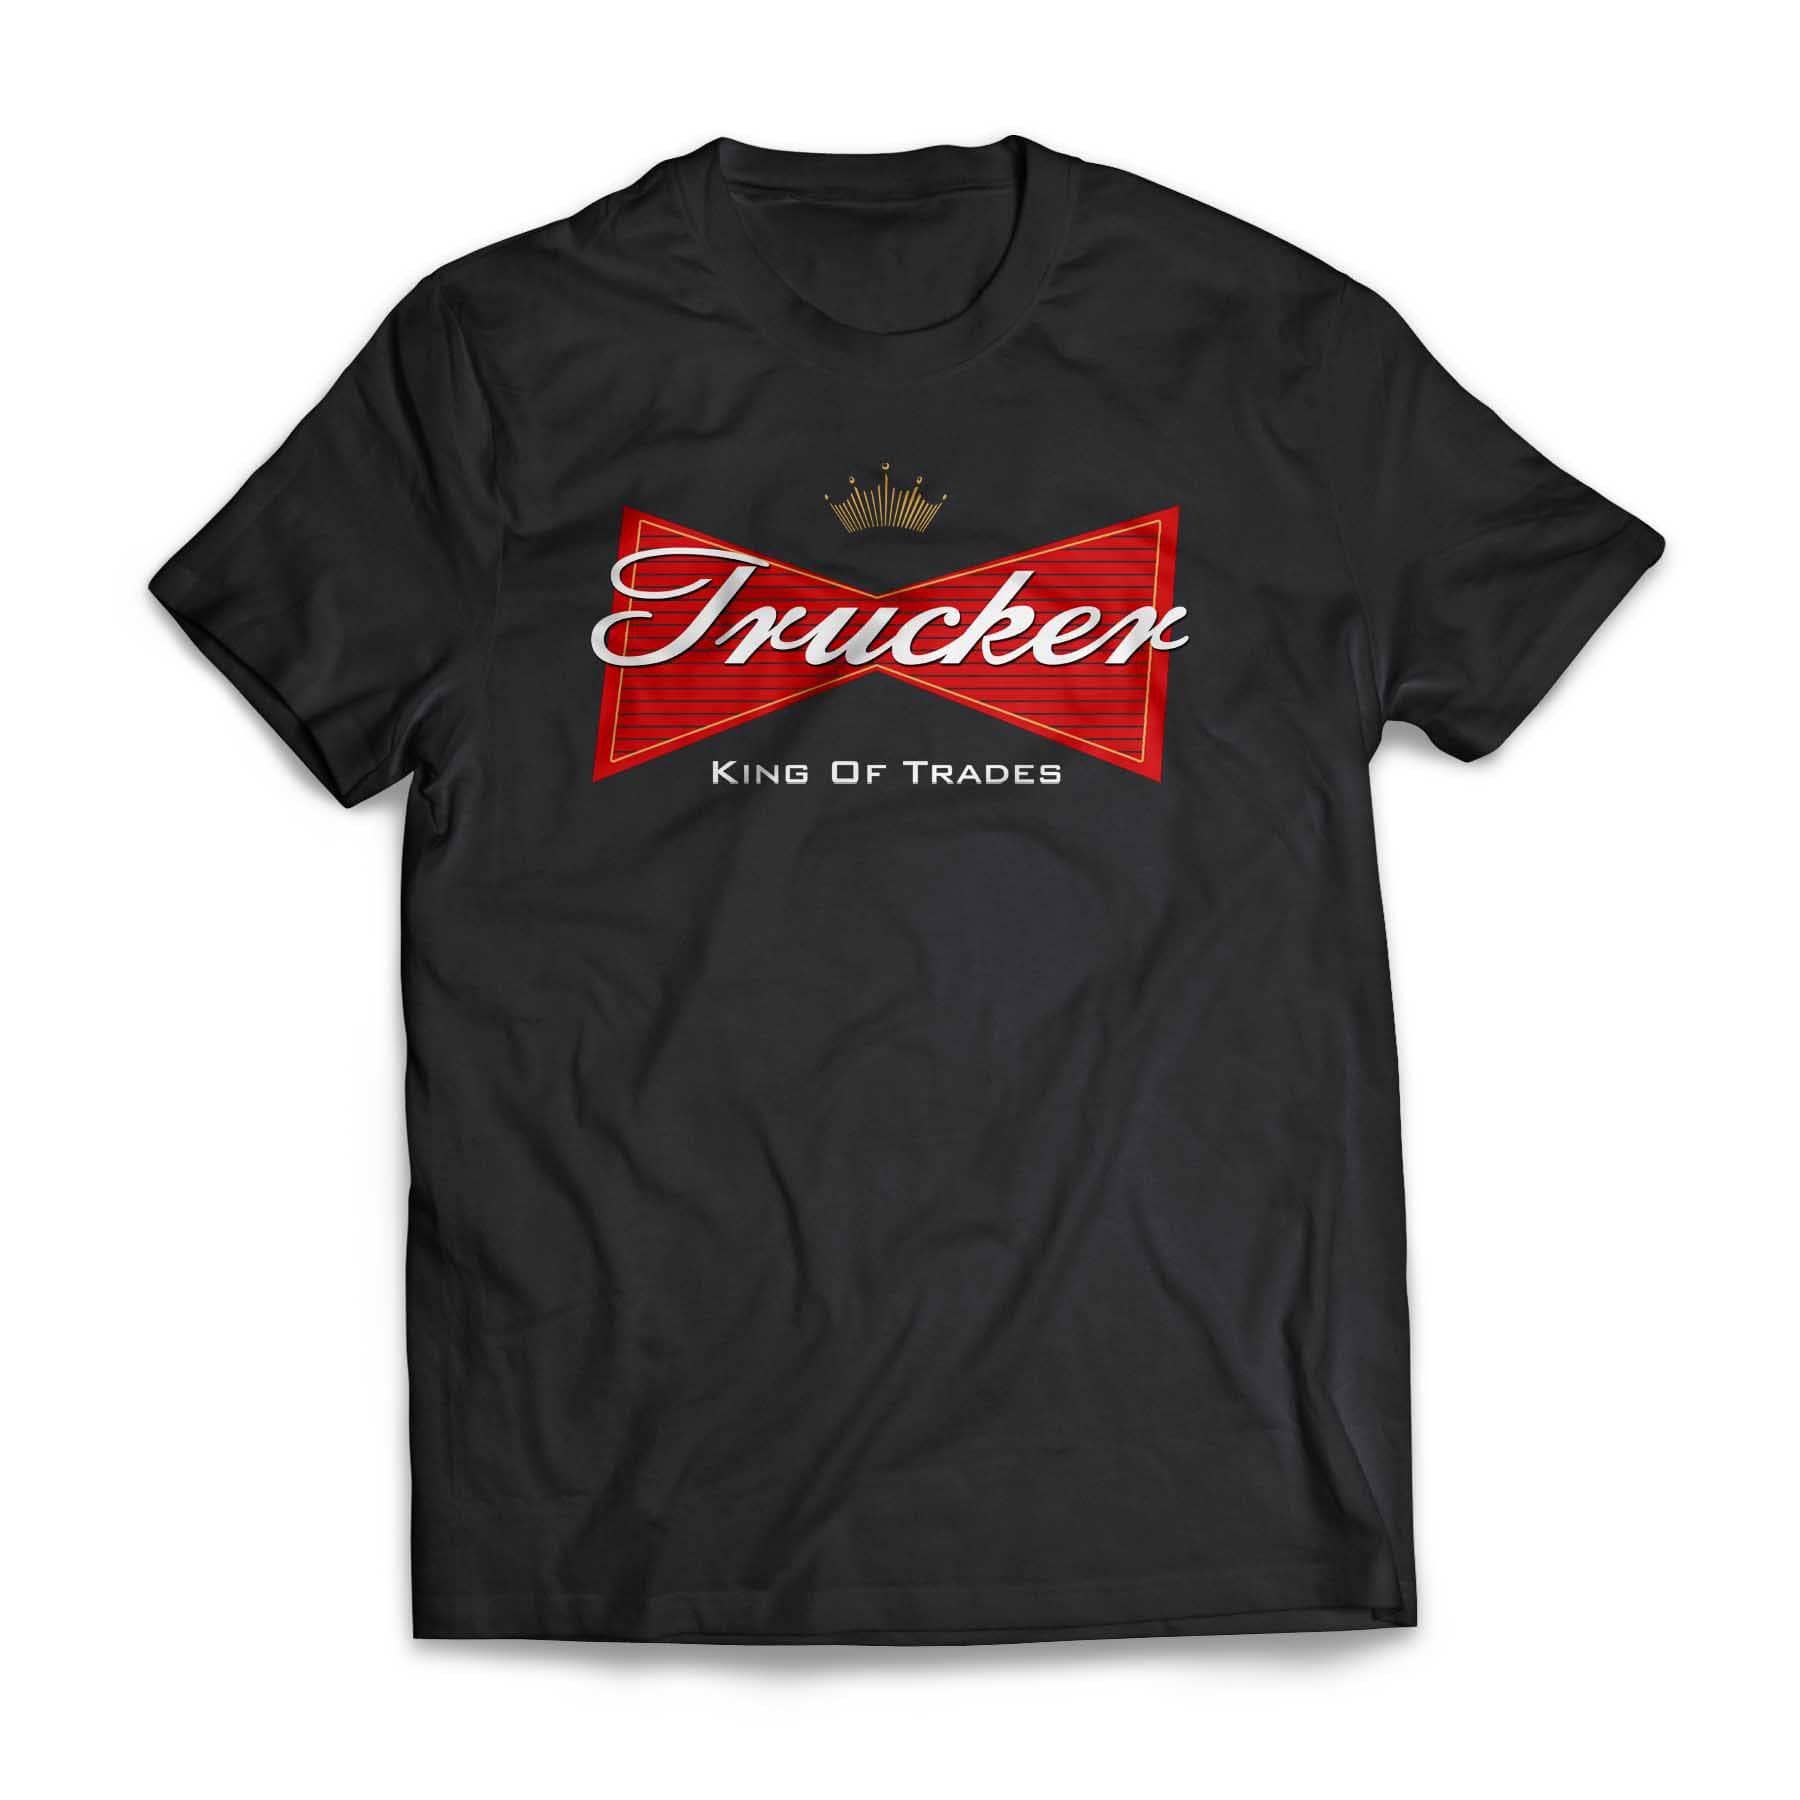 Trucker King Of Trades